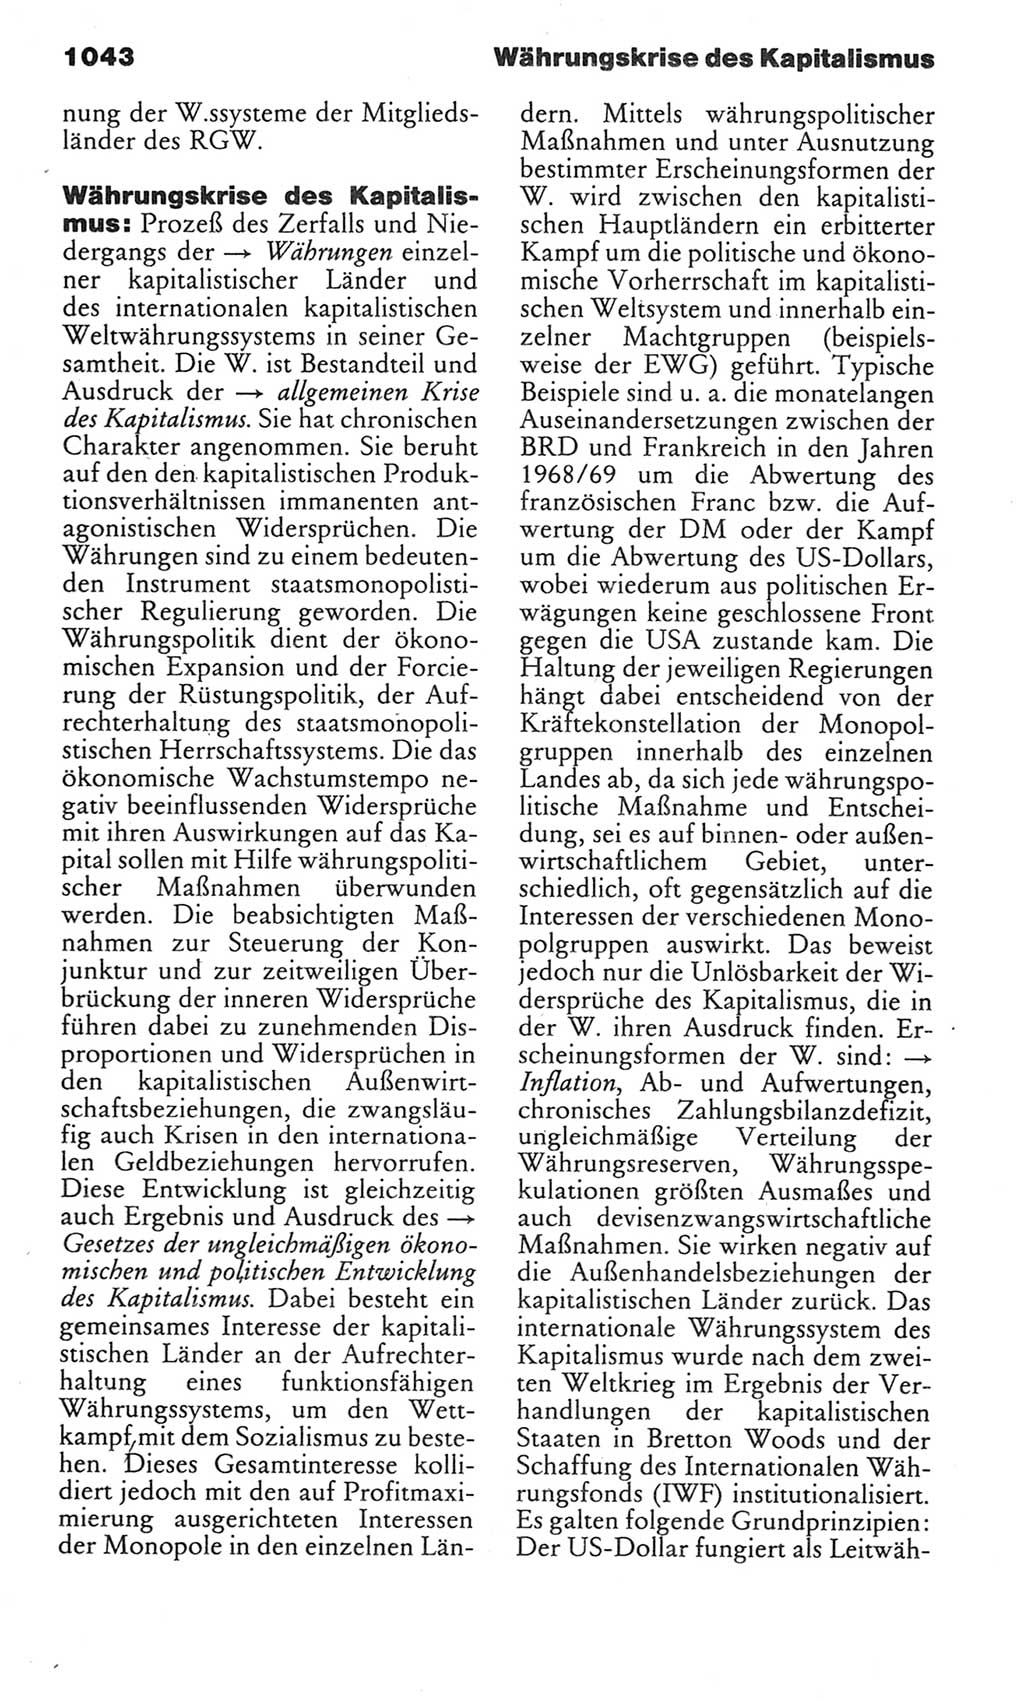 Kleines politisches Wörterbuch [Deutsche Demokratische Republik (DDR)] 1983, Seite 1043 (Kl. pol. Wb. DDR 1983, S. 1043)